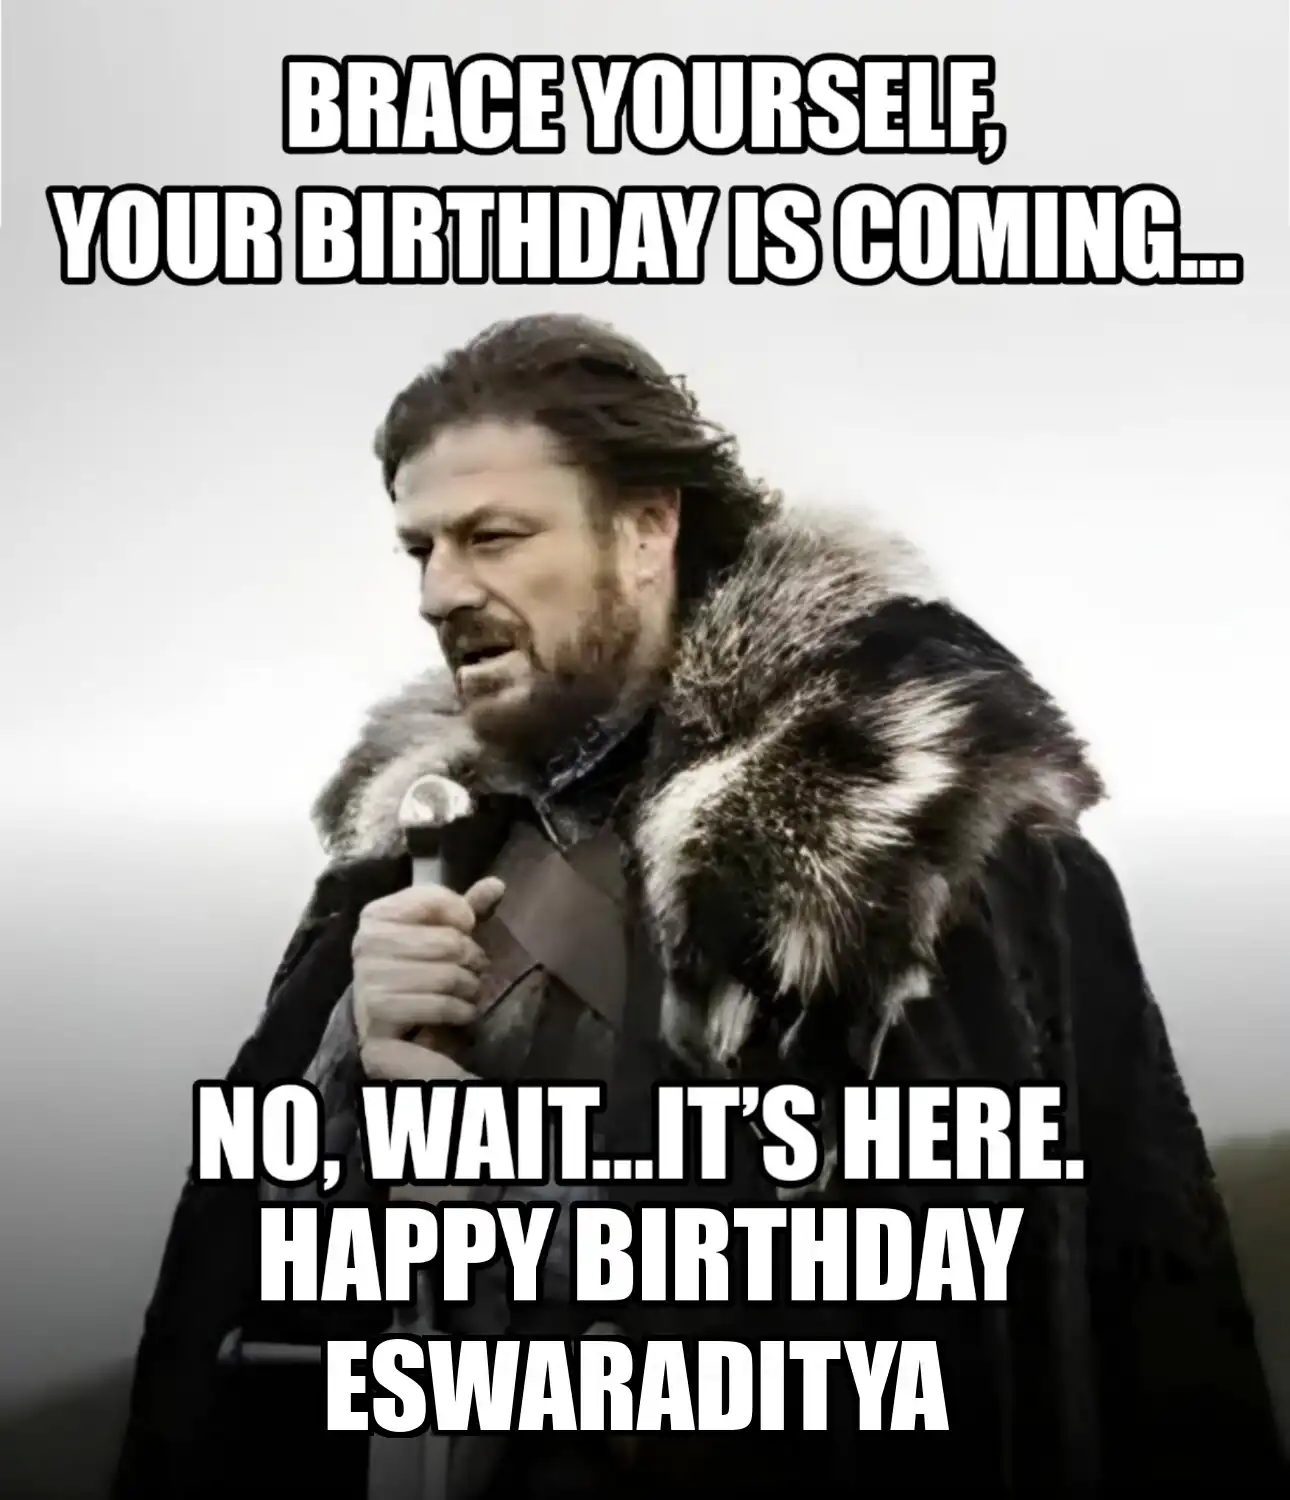 Happy Birthday Eswaraditya Brace Yourself Your Birthday Is Coming Meme